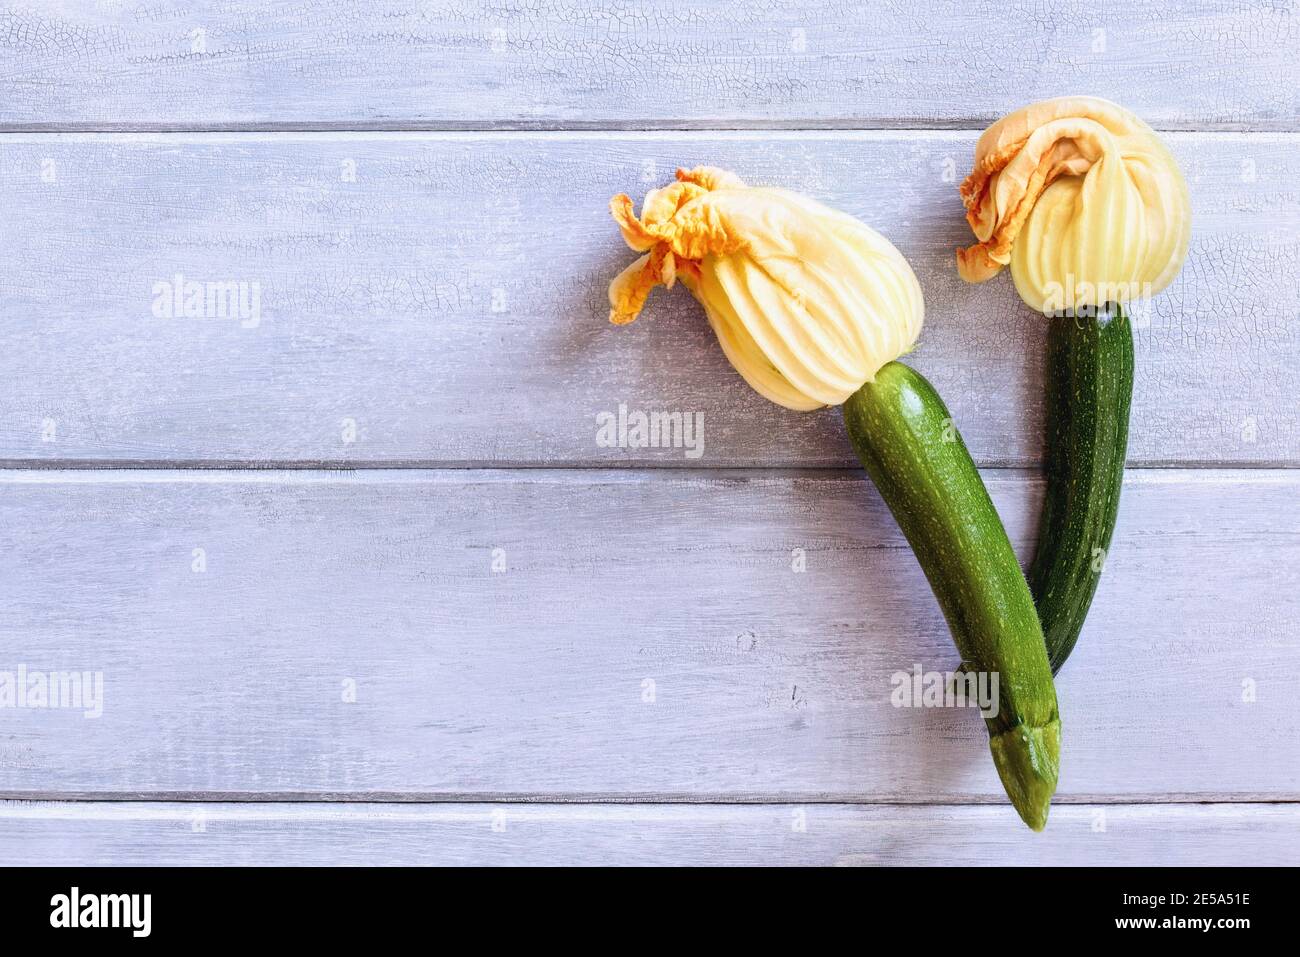 Flatlay di Courgette bambino o zucca zucchina con fiori su un rustico tavolo di legno blu. Ripresa dalla vista superiore con spazio per la copia. Foto Stock